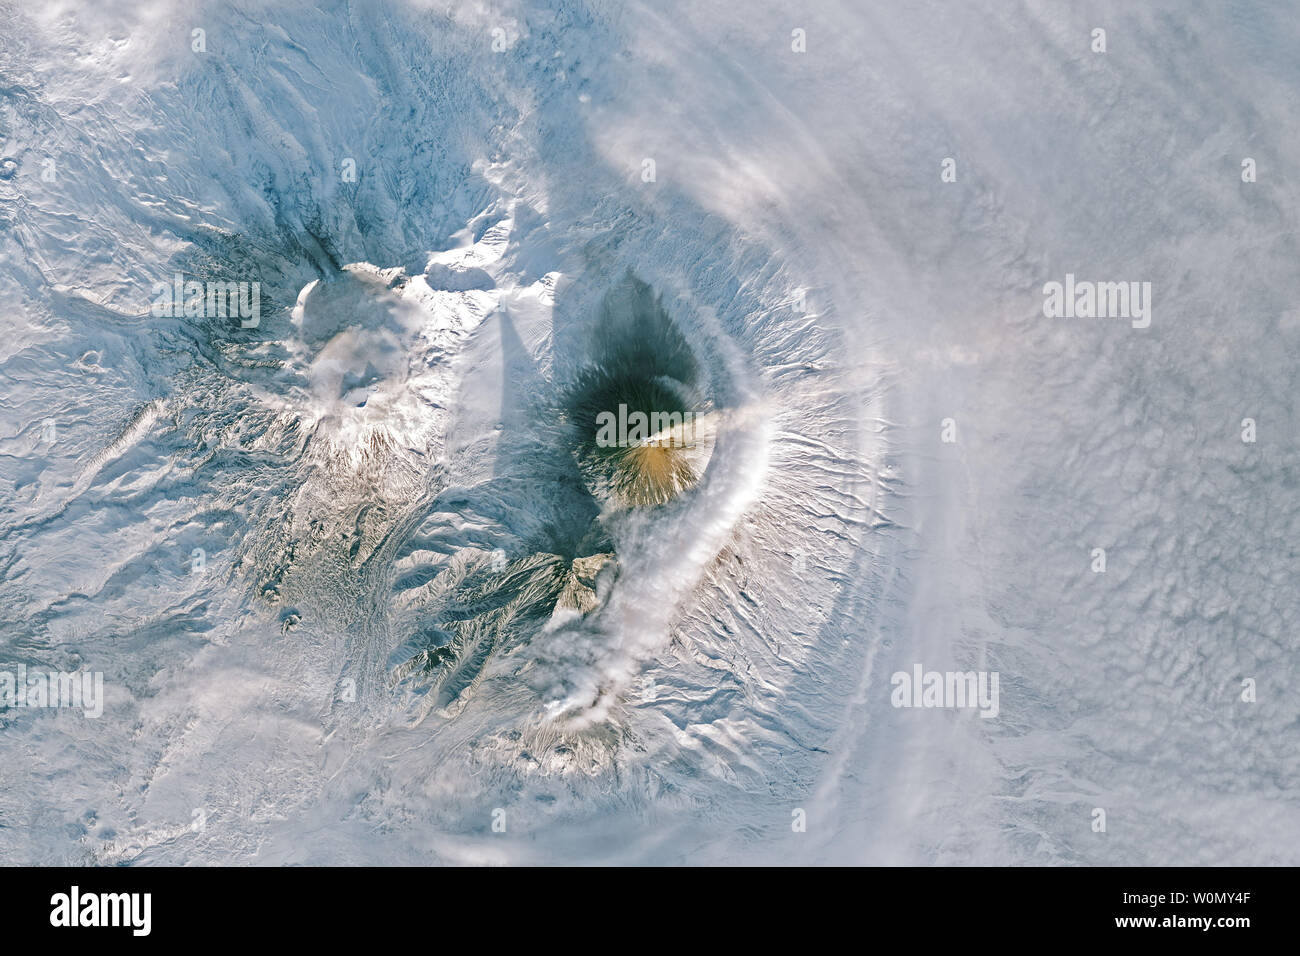 Sentado en el borde noroeste del Anillo de Fuego del Pacifico, Kamchatka es uno de los más volcánicamente activa parcelas de tierra en el mundo. Al menos 300 volcanes que salpican la península, y al menos 29 de ellos están activos. Dos de estos volcanes fueron afanosamente puffing lejos a principios de enero de 2018. El Moderate Resolution Imaging Spectroradiometer (MODIS) a bordo del satélite Terra de la NASA capturó un atisbo de penachos y Shiveluch Klyuchevskaya aumentando desde el 9 de enero. El penacho de Shiveluch se extendía por al menos 100 kilómetros. NASA/UPI Foto de stock